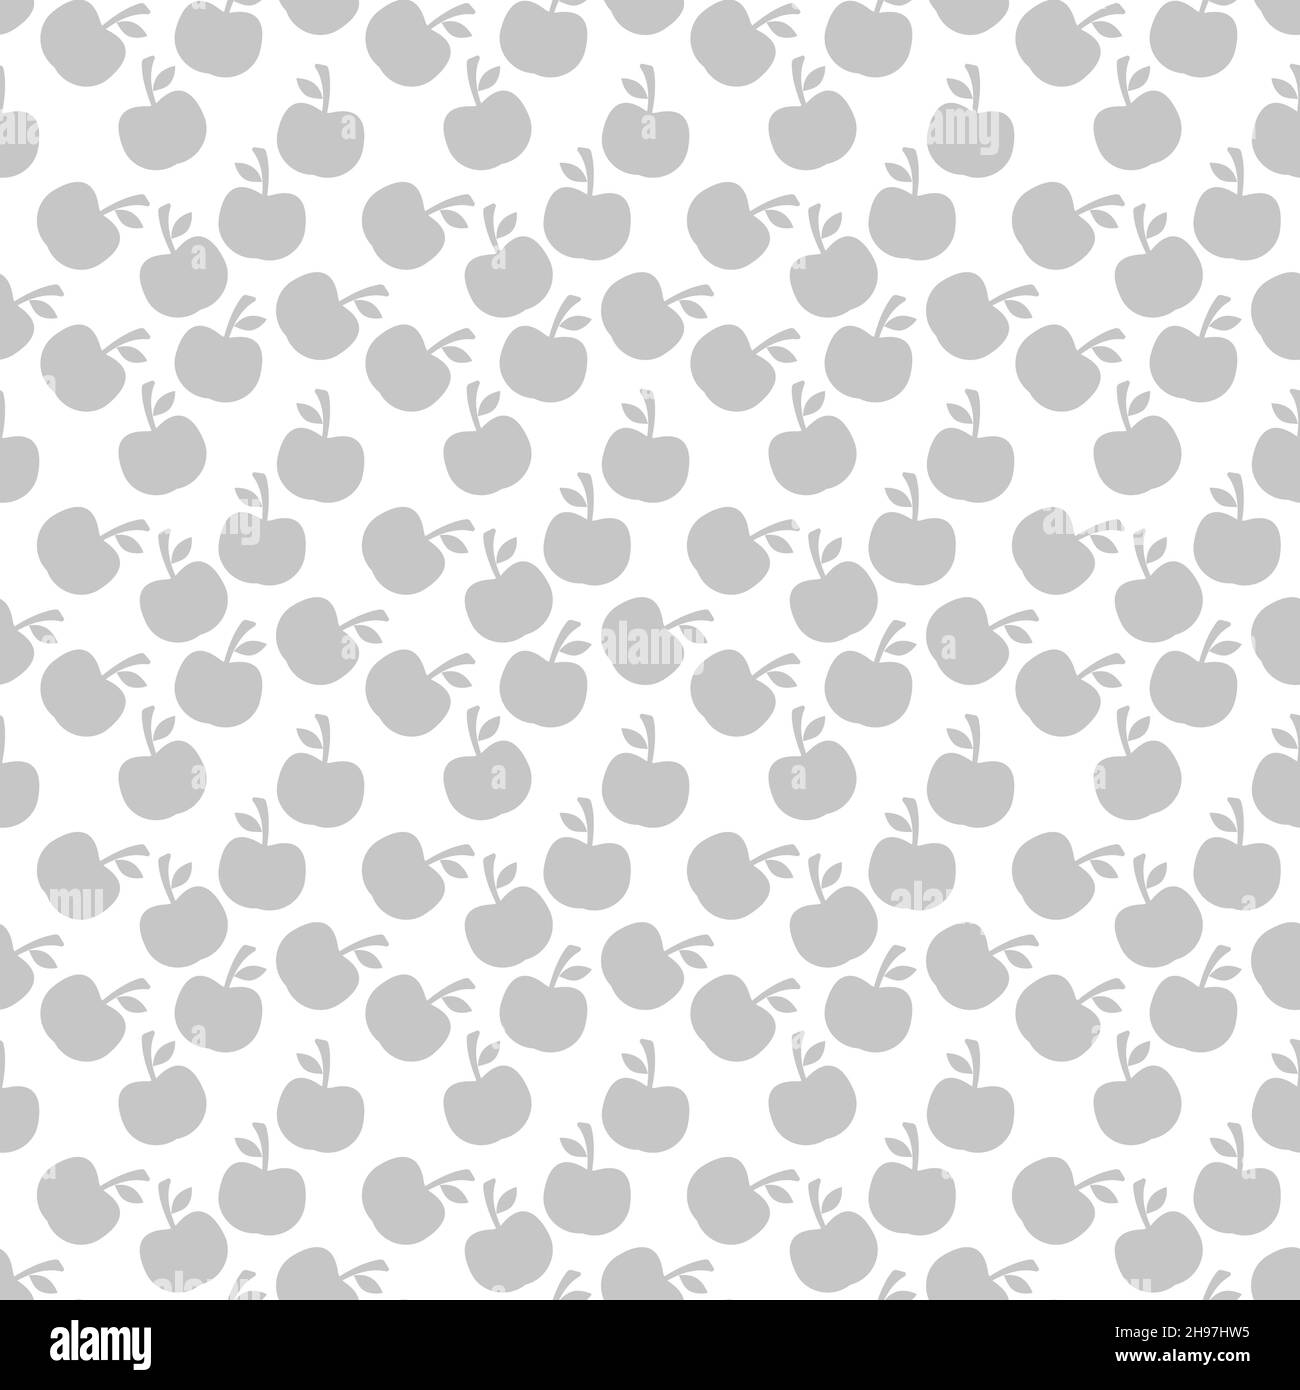 Aquarell-Nahtloses Muster mit Äpfeln auf weißem Hintergrund. Vektorgrafik. Handgezeichneter Hintergrund. eps 10 Stock Vektor